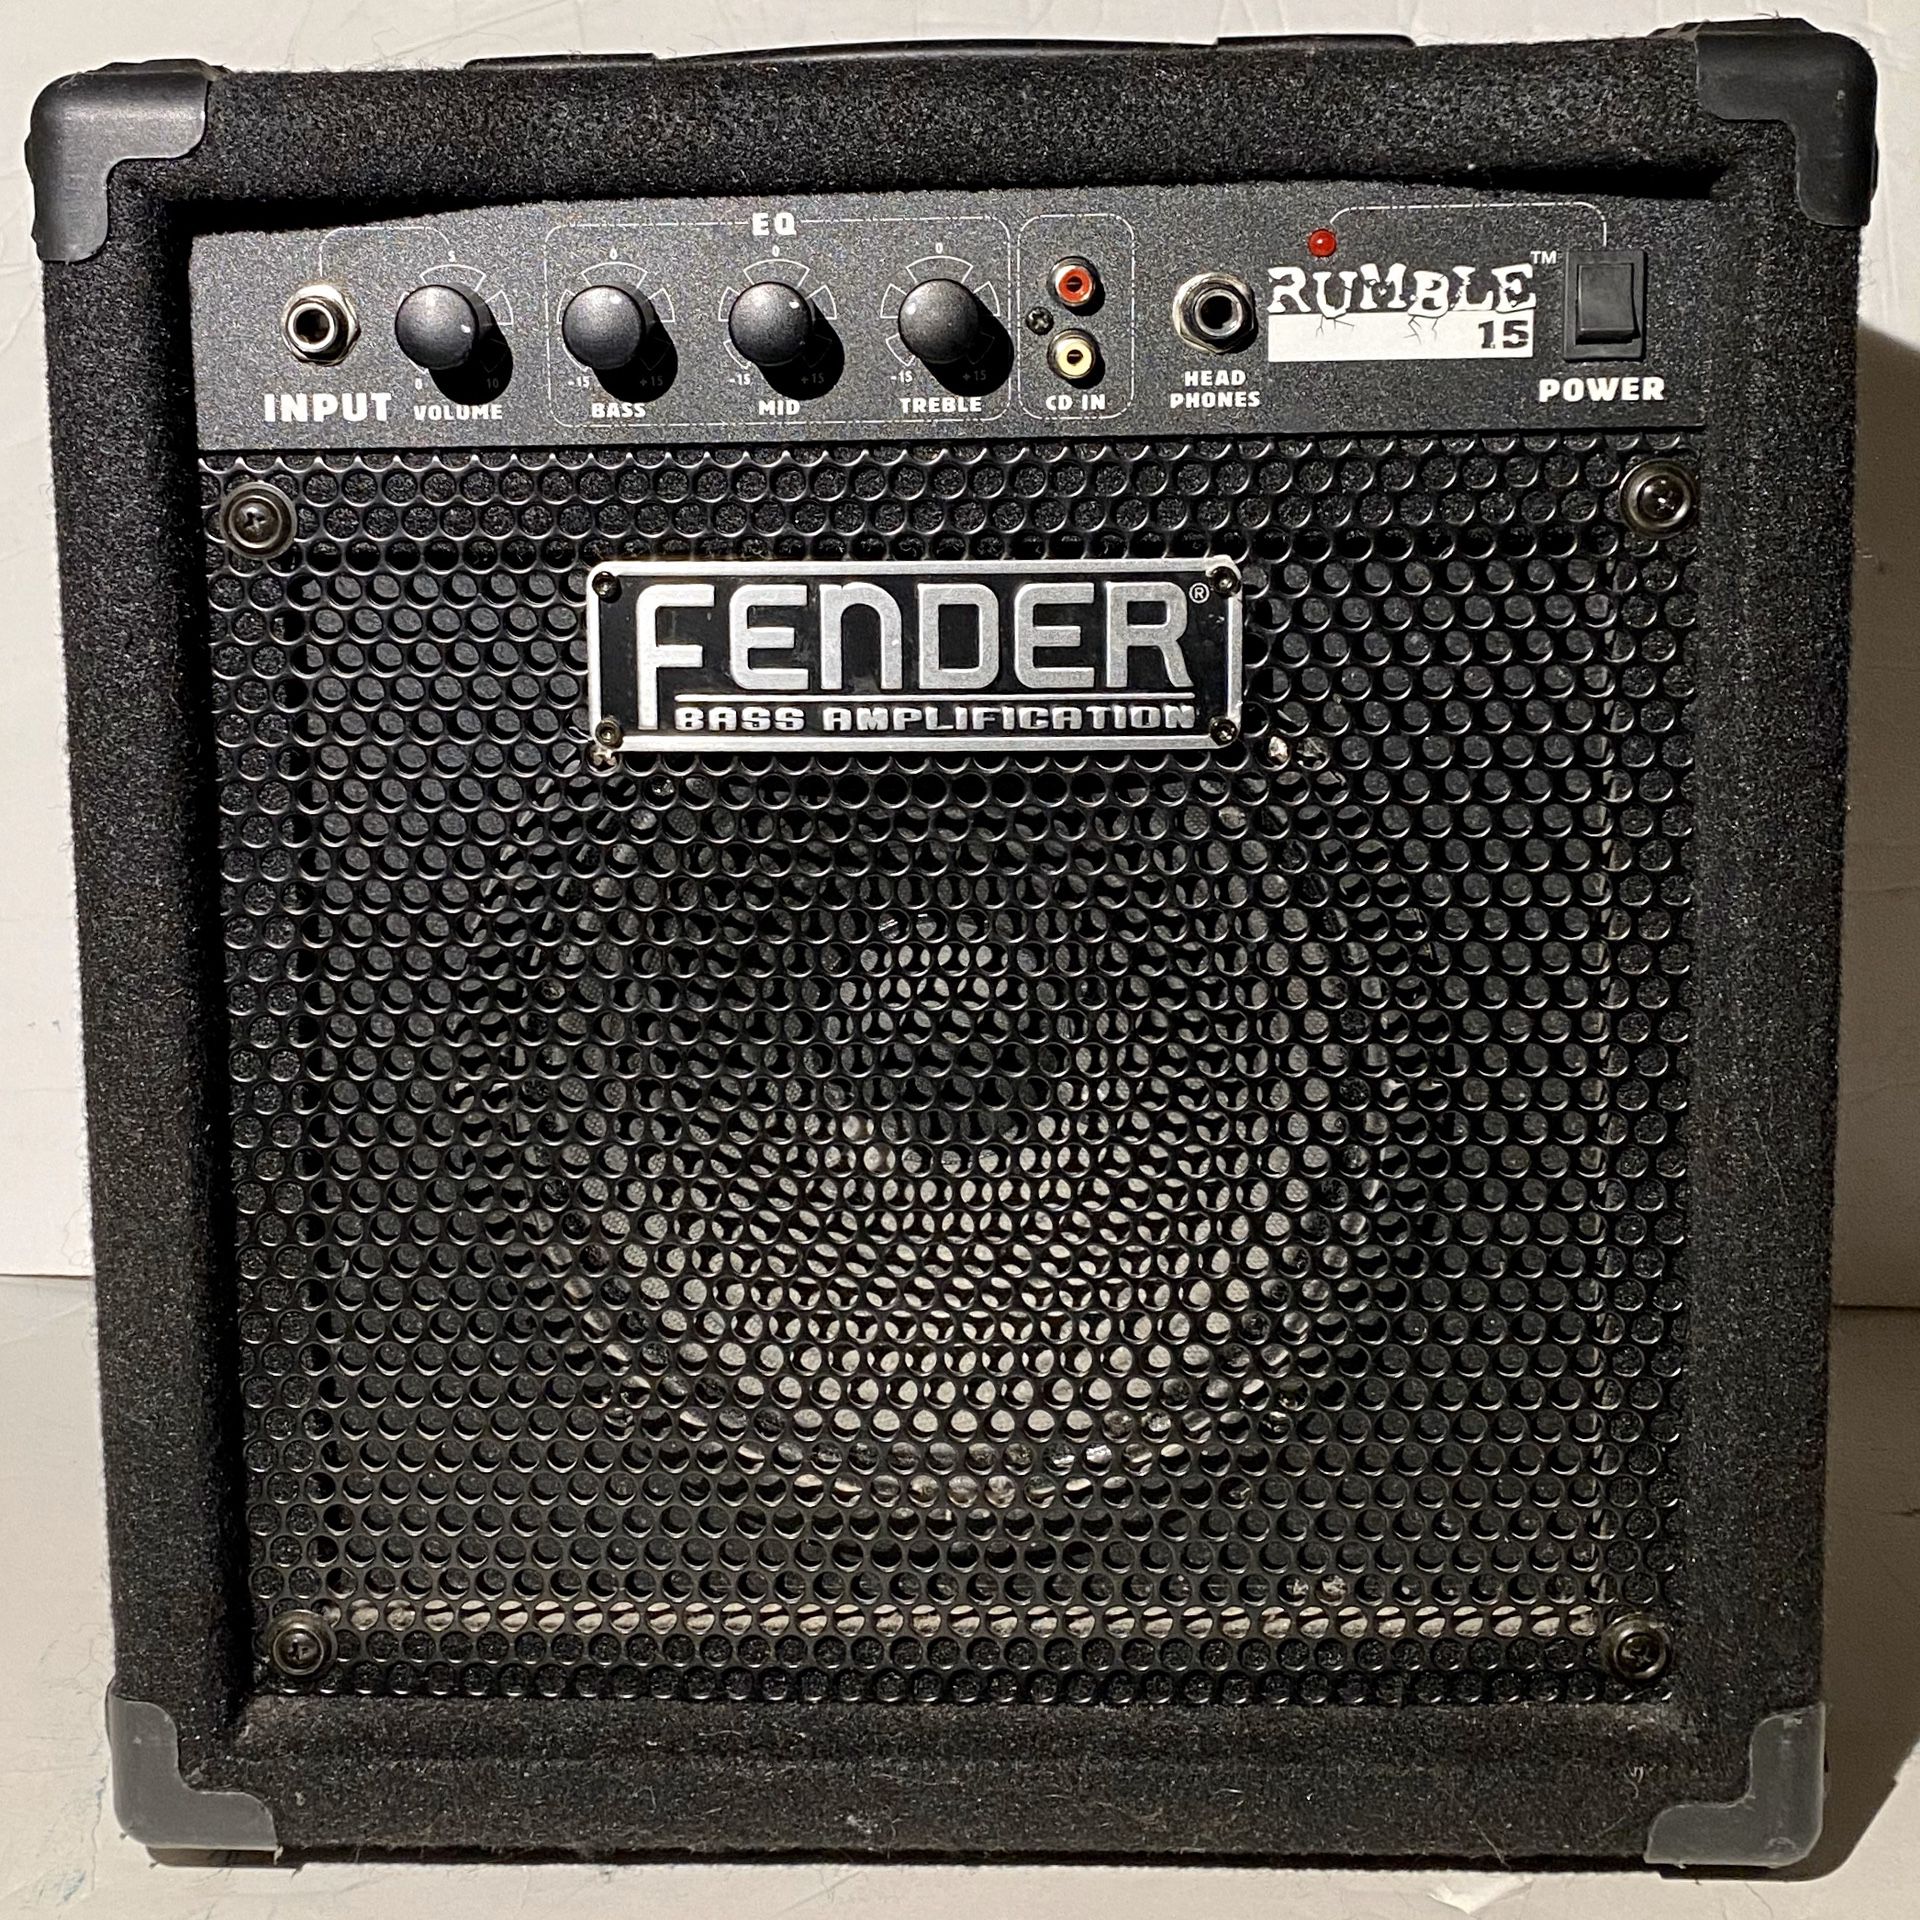 Fender Bass Amplication Rumble 15 38W PR 497 Guitar Amplifier